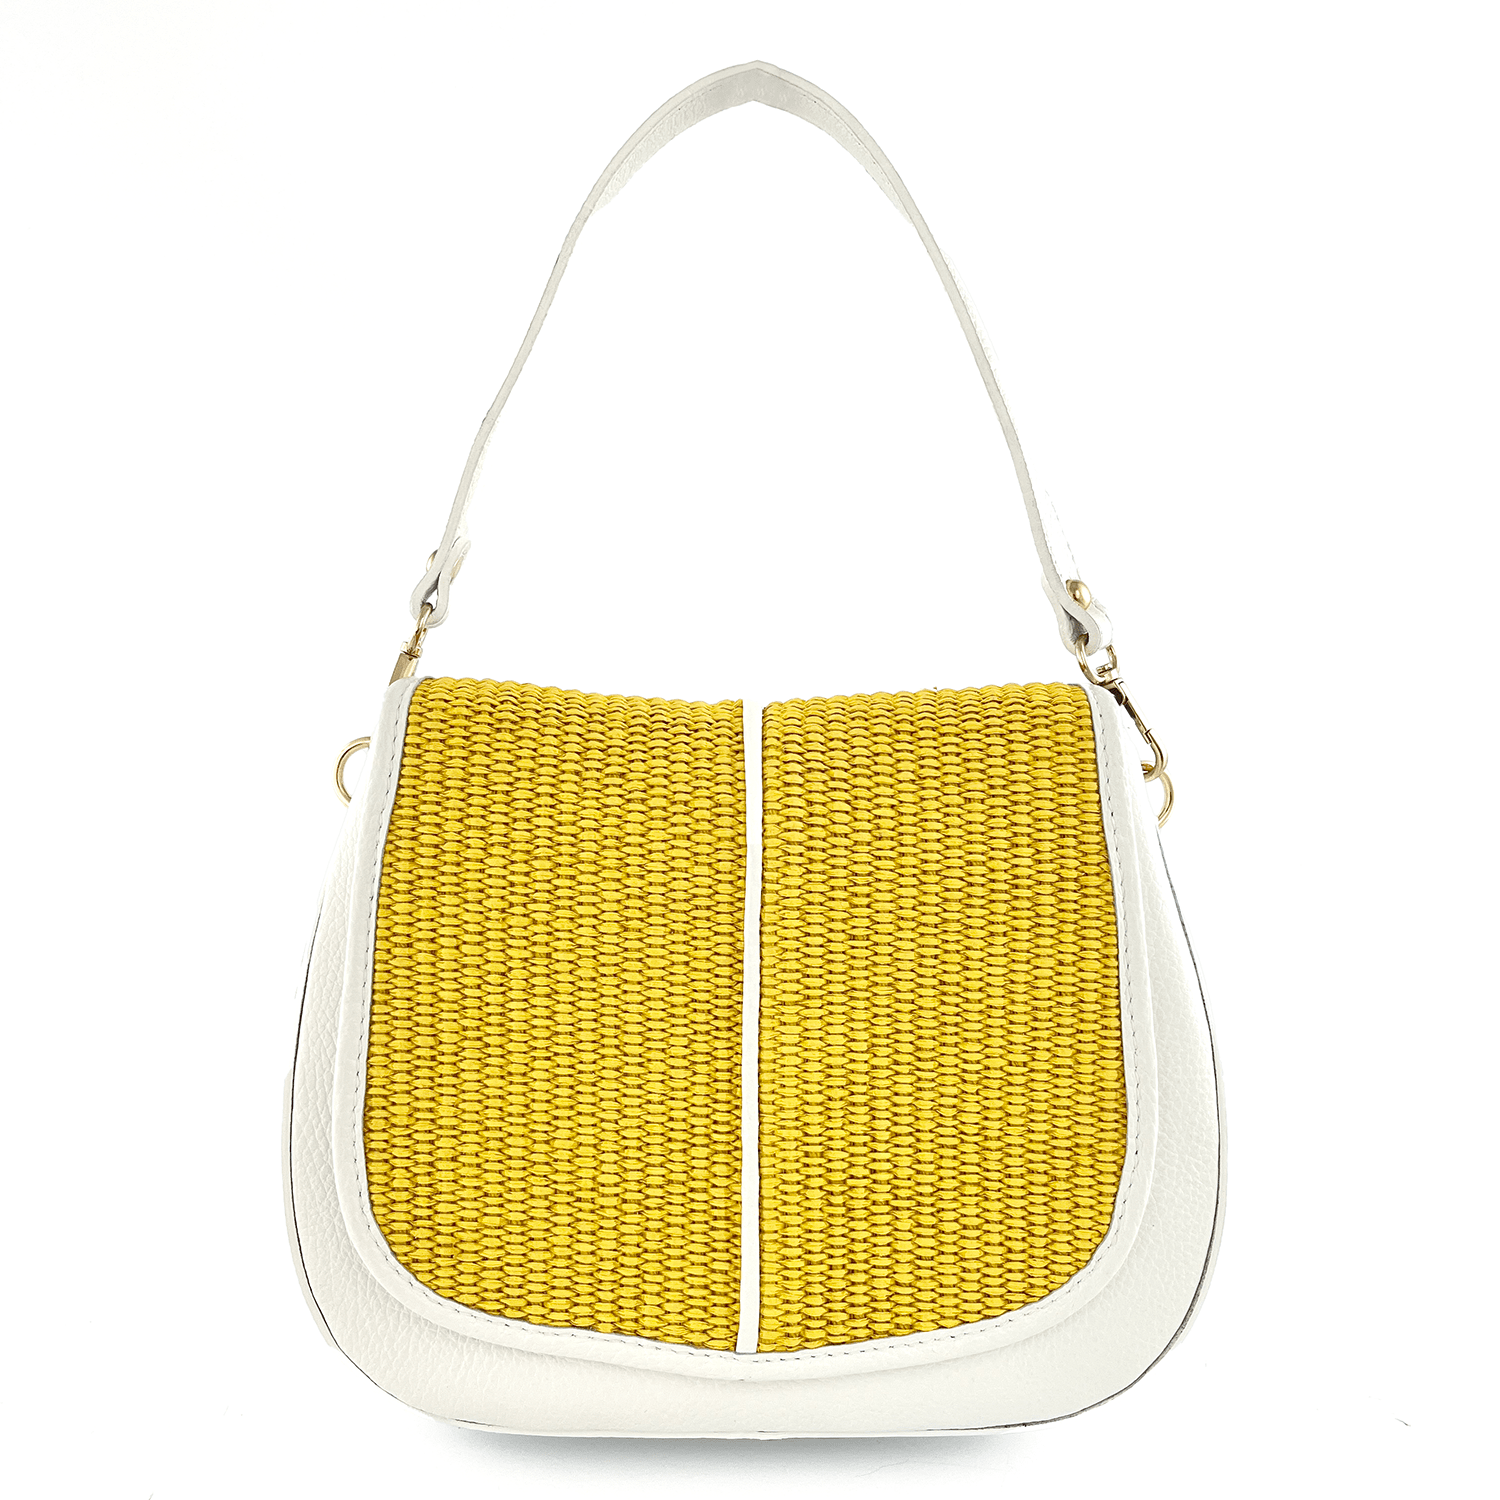 Дамска чанта от естествена кожа с 2 дръжки и ръчно изтъкана рафия - бяло/жълто 